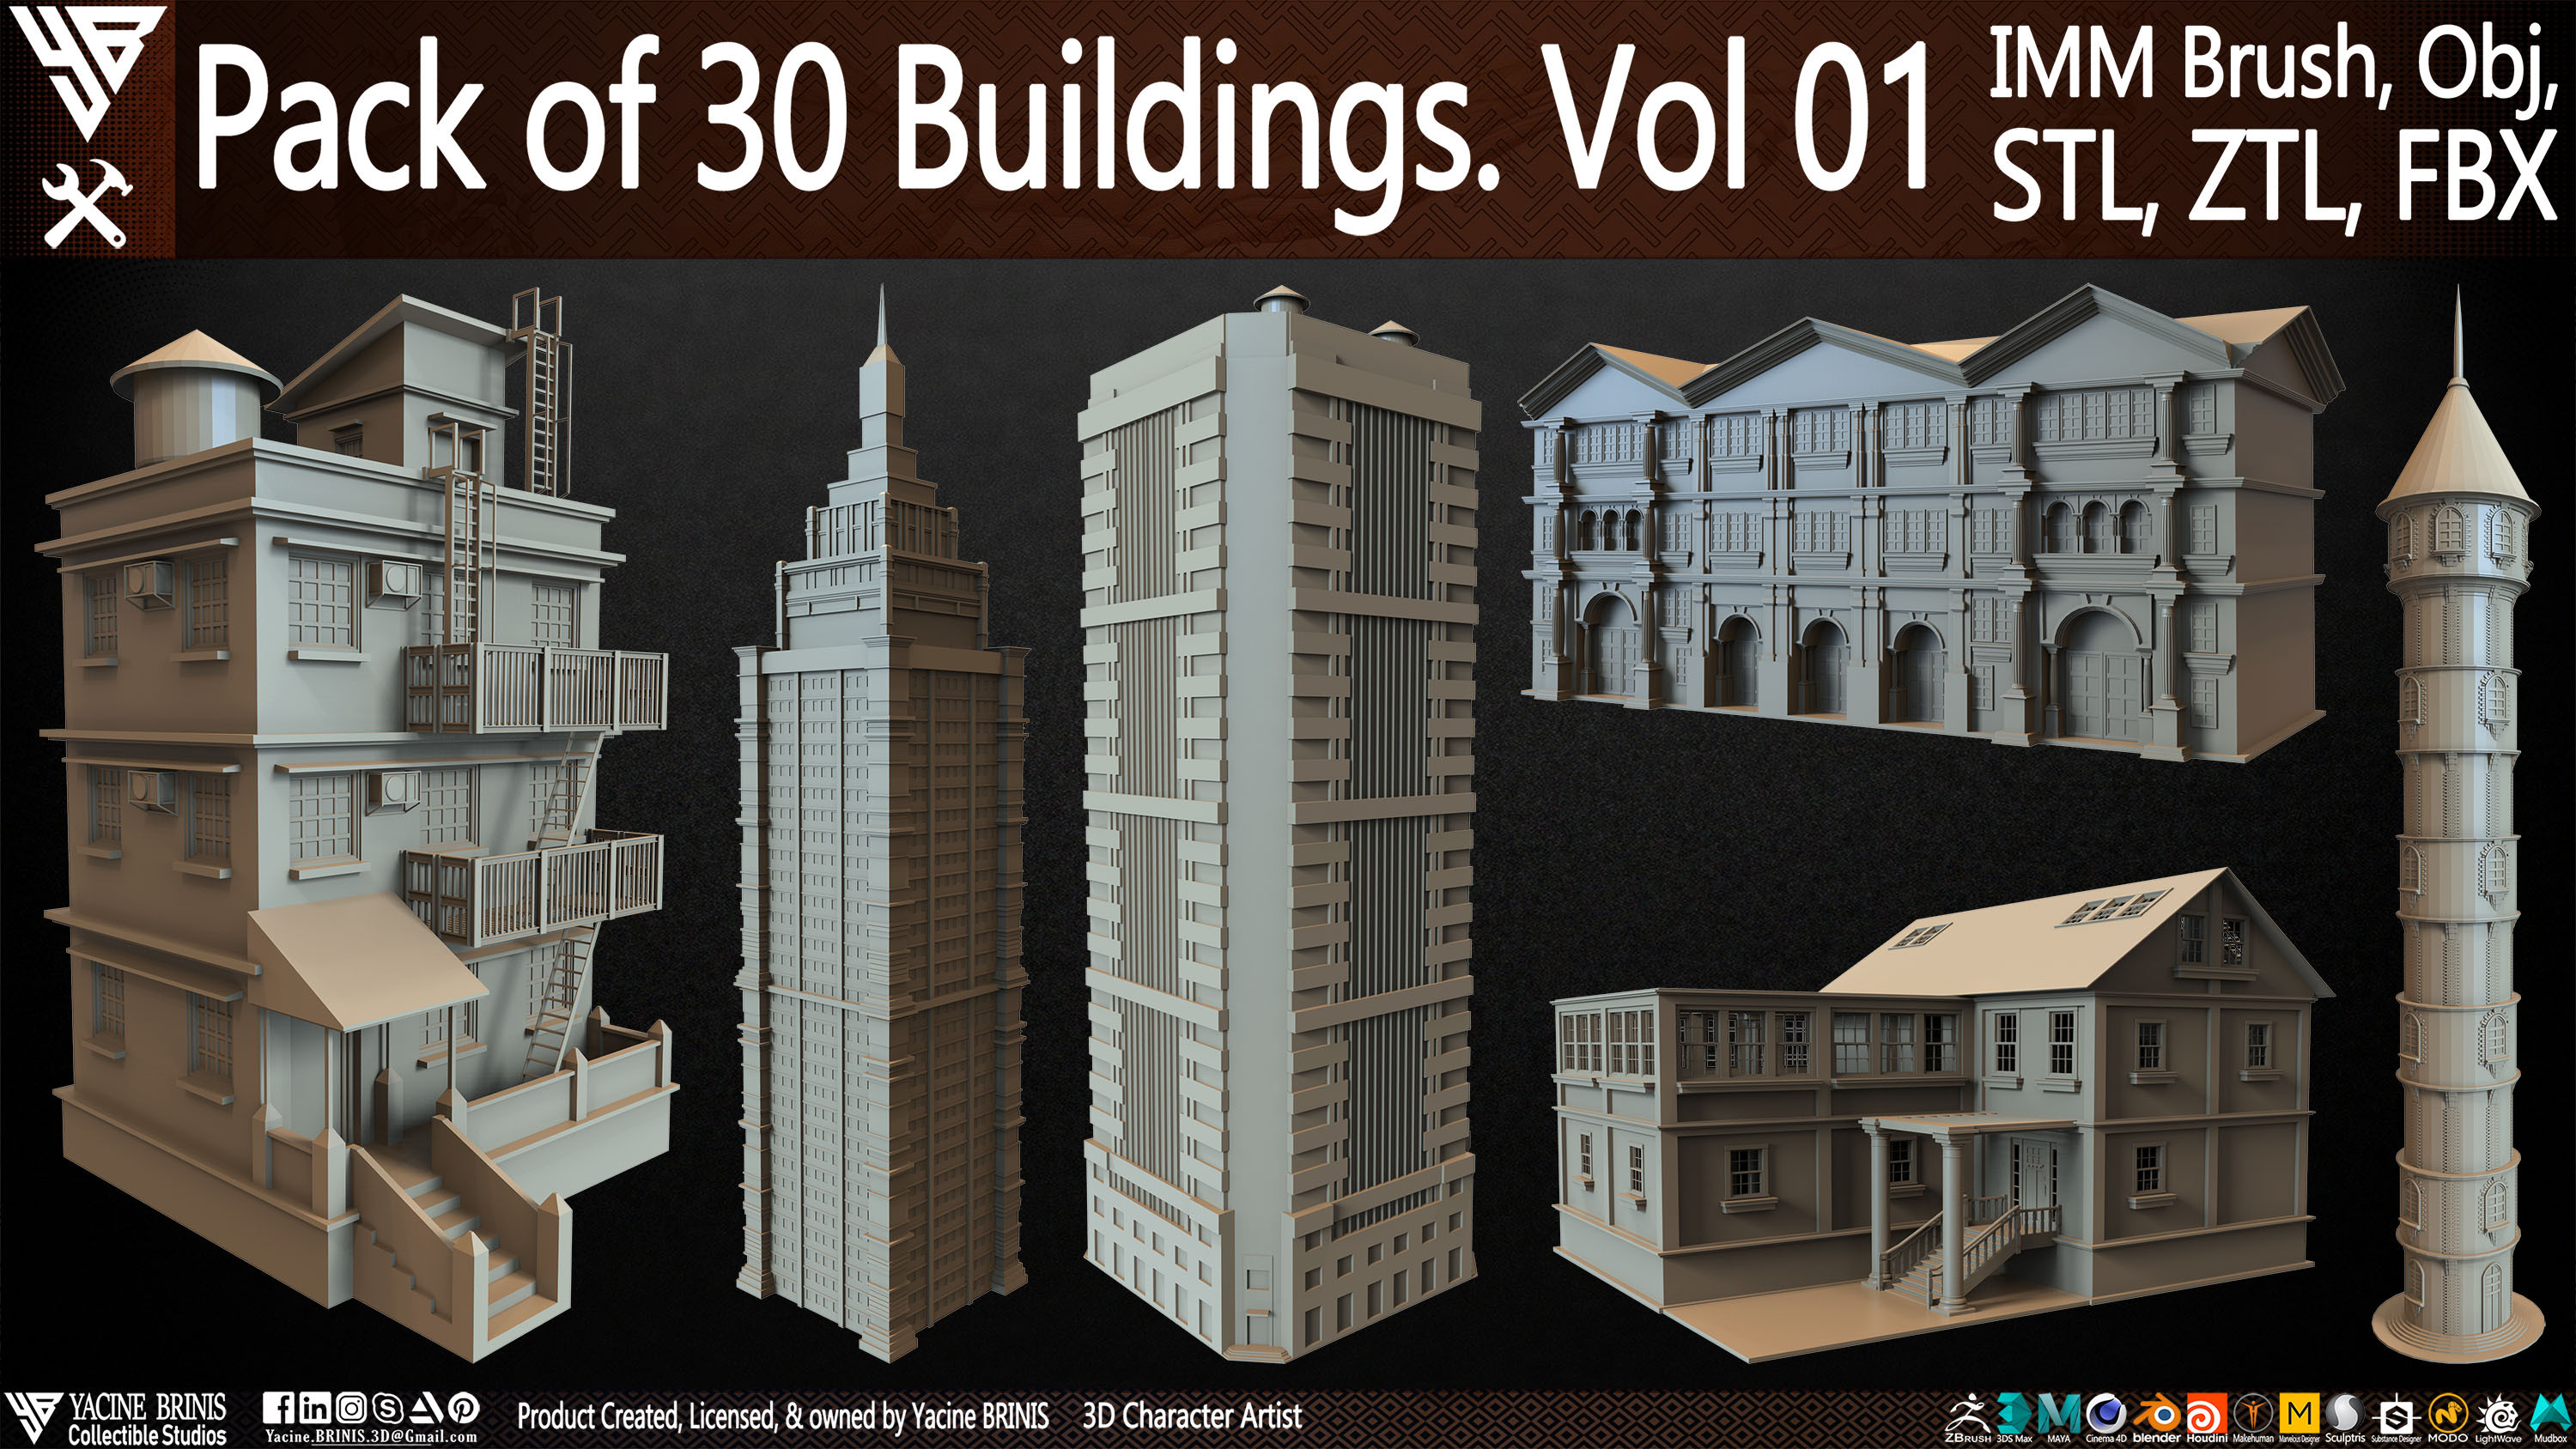 Pack of 30 Buildings Vol 01 Sculpted by Yacine BRINIS Set 001